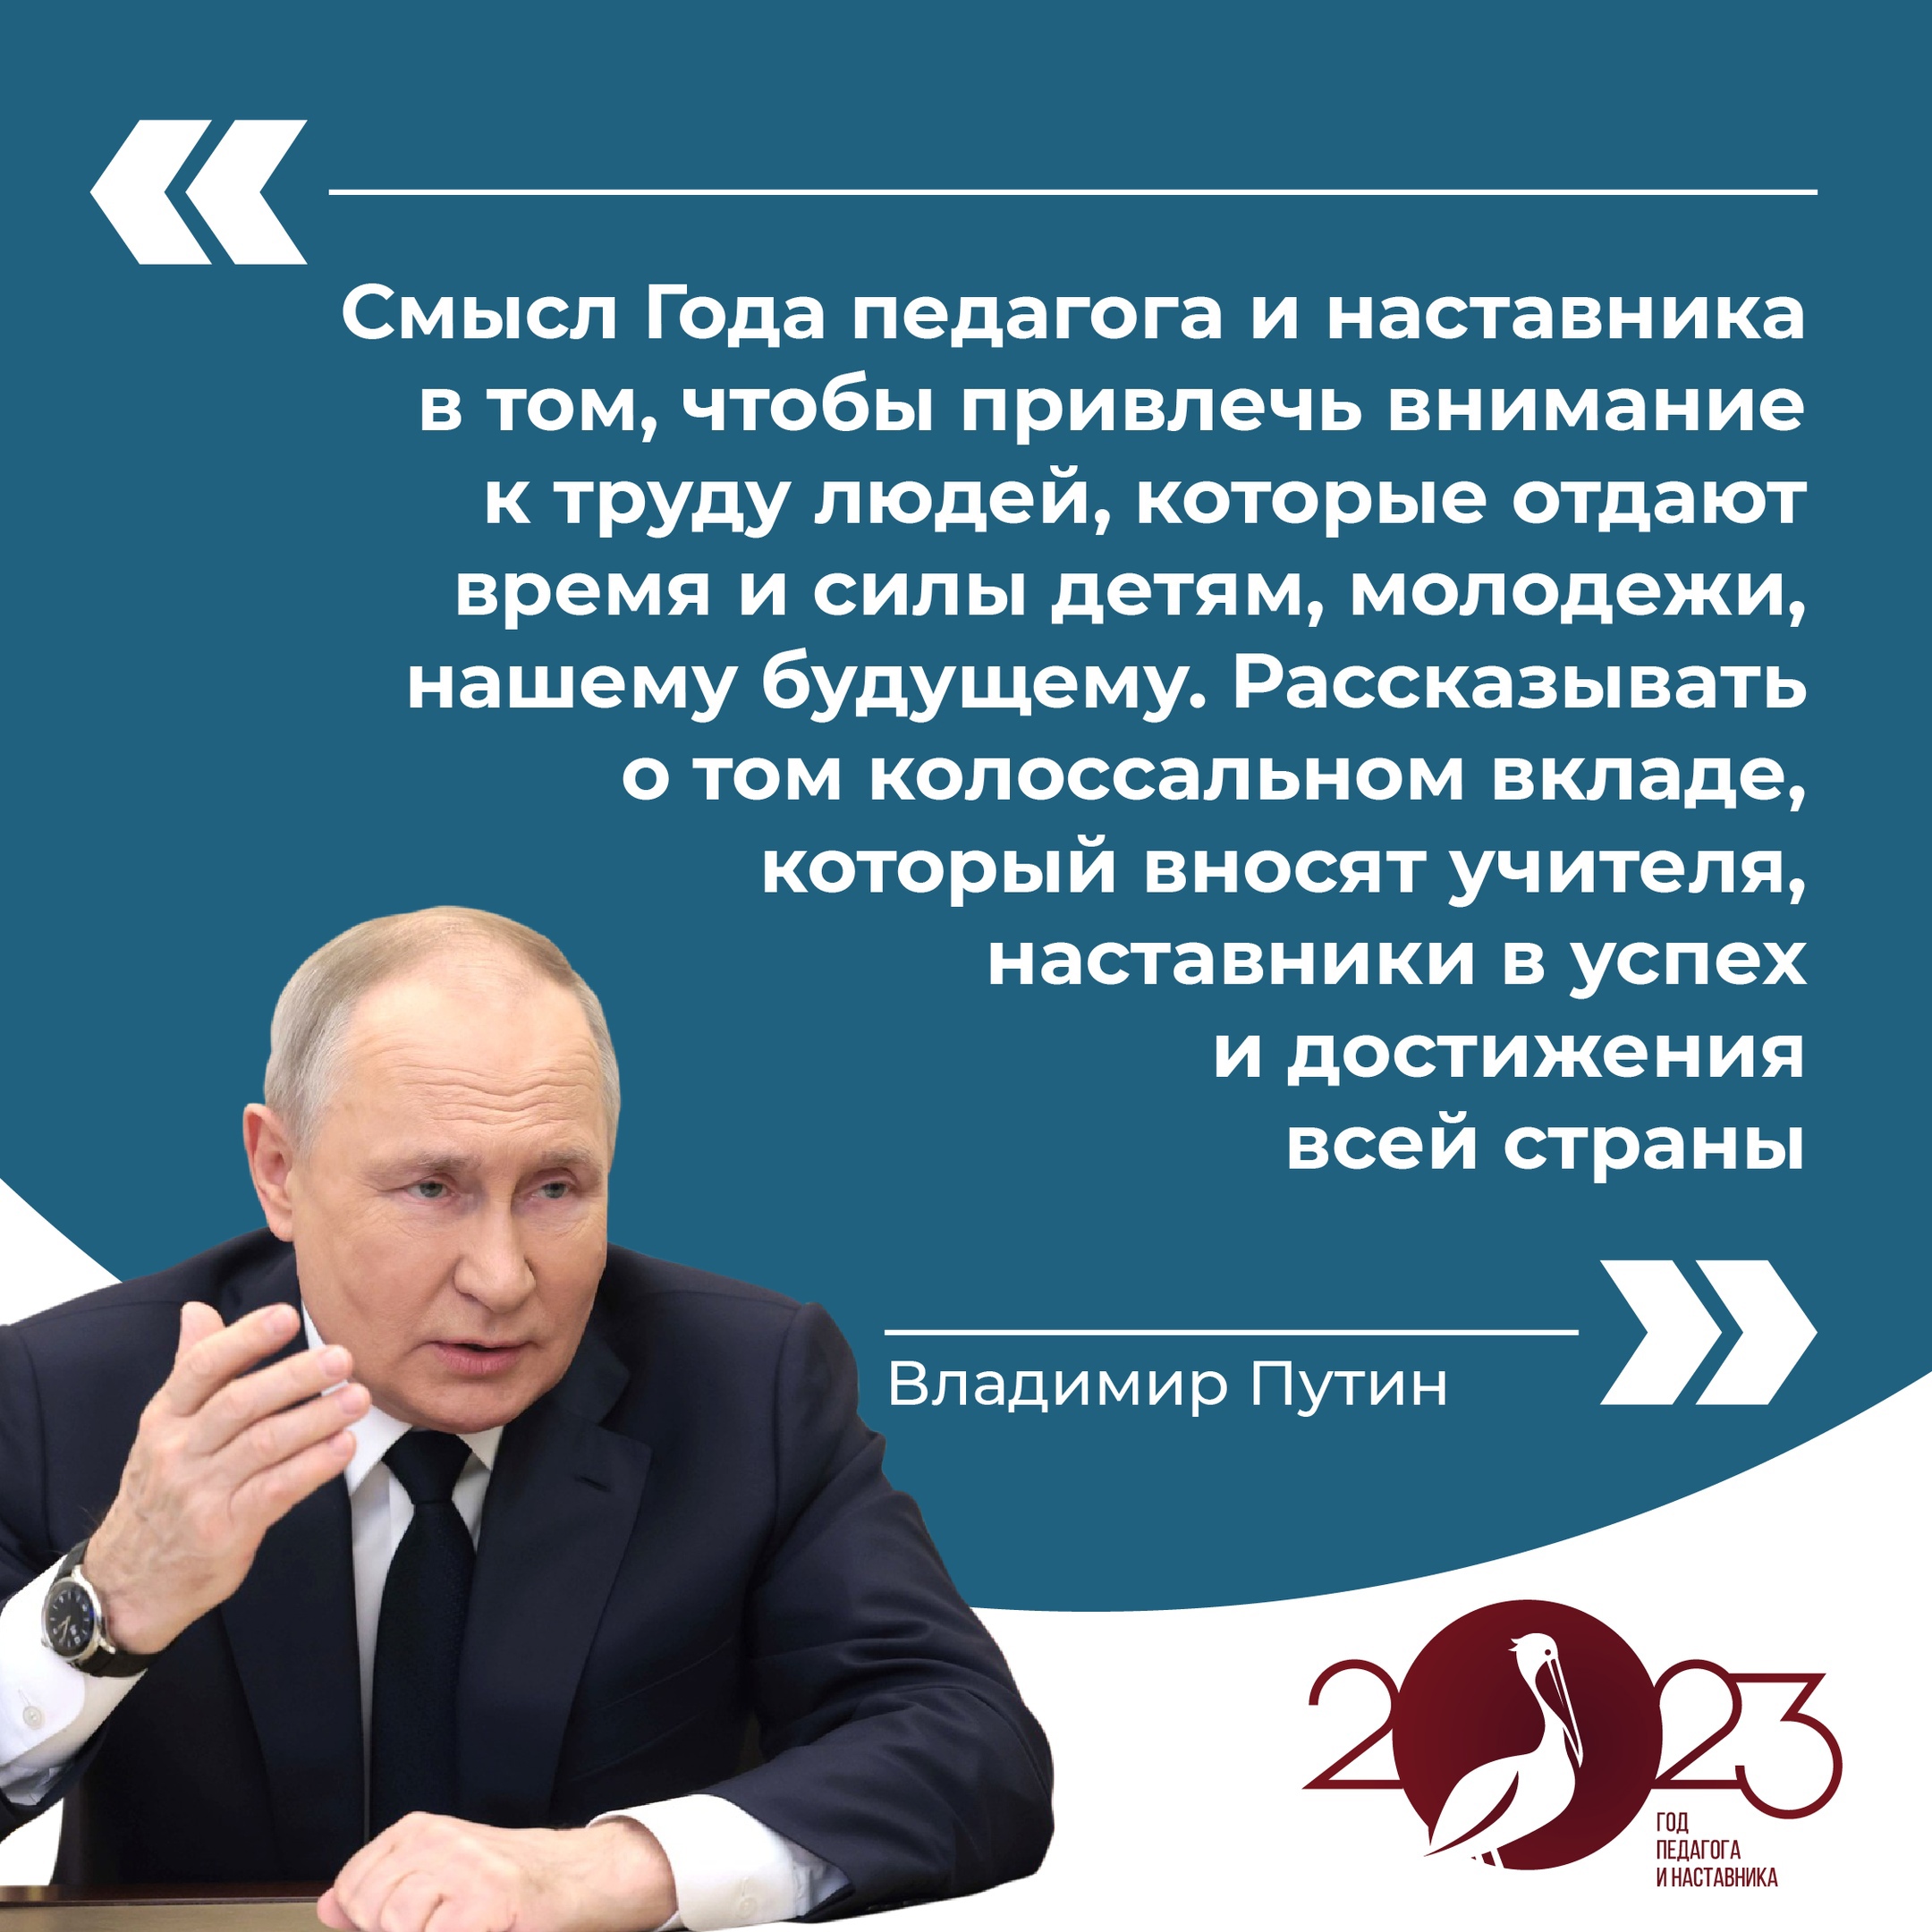 В этому году Владимир Путин дал старт Году педагога и наставника в России.